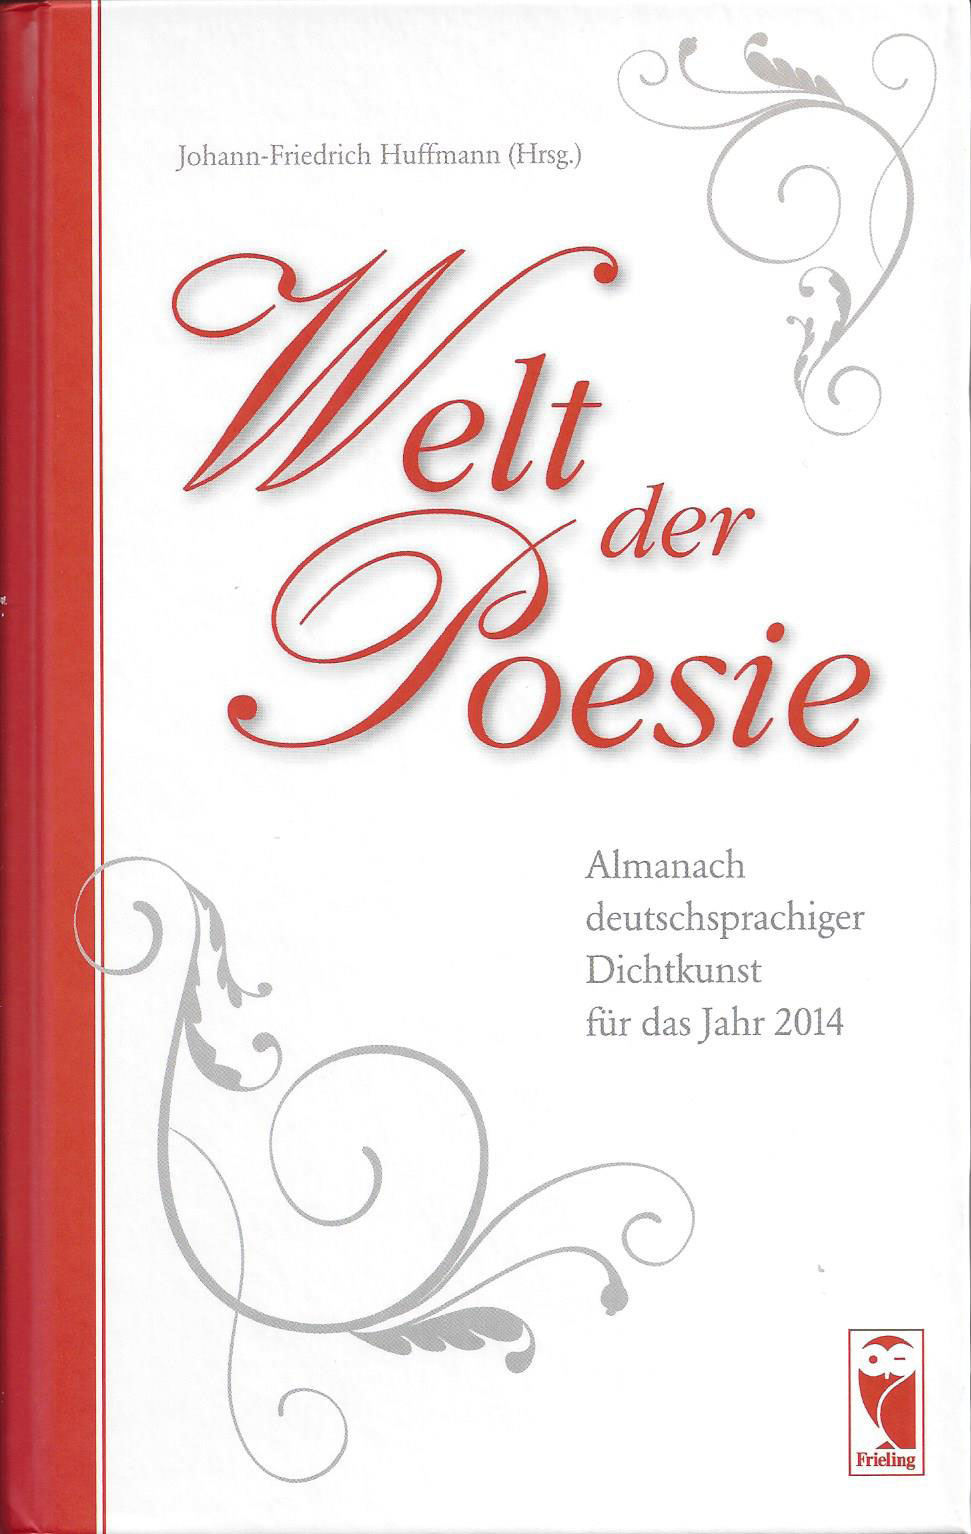 Welt der Poesie, Edition 2013